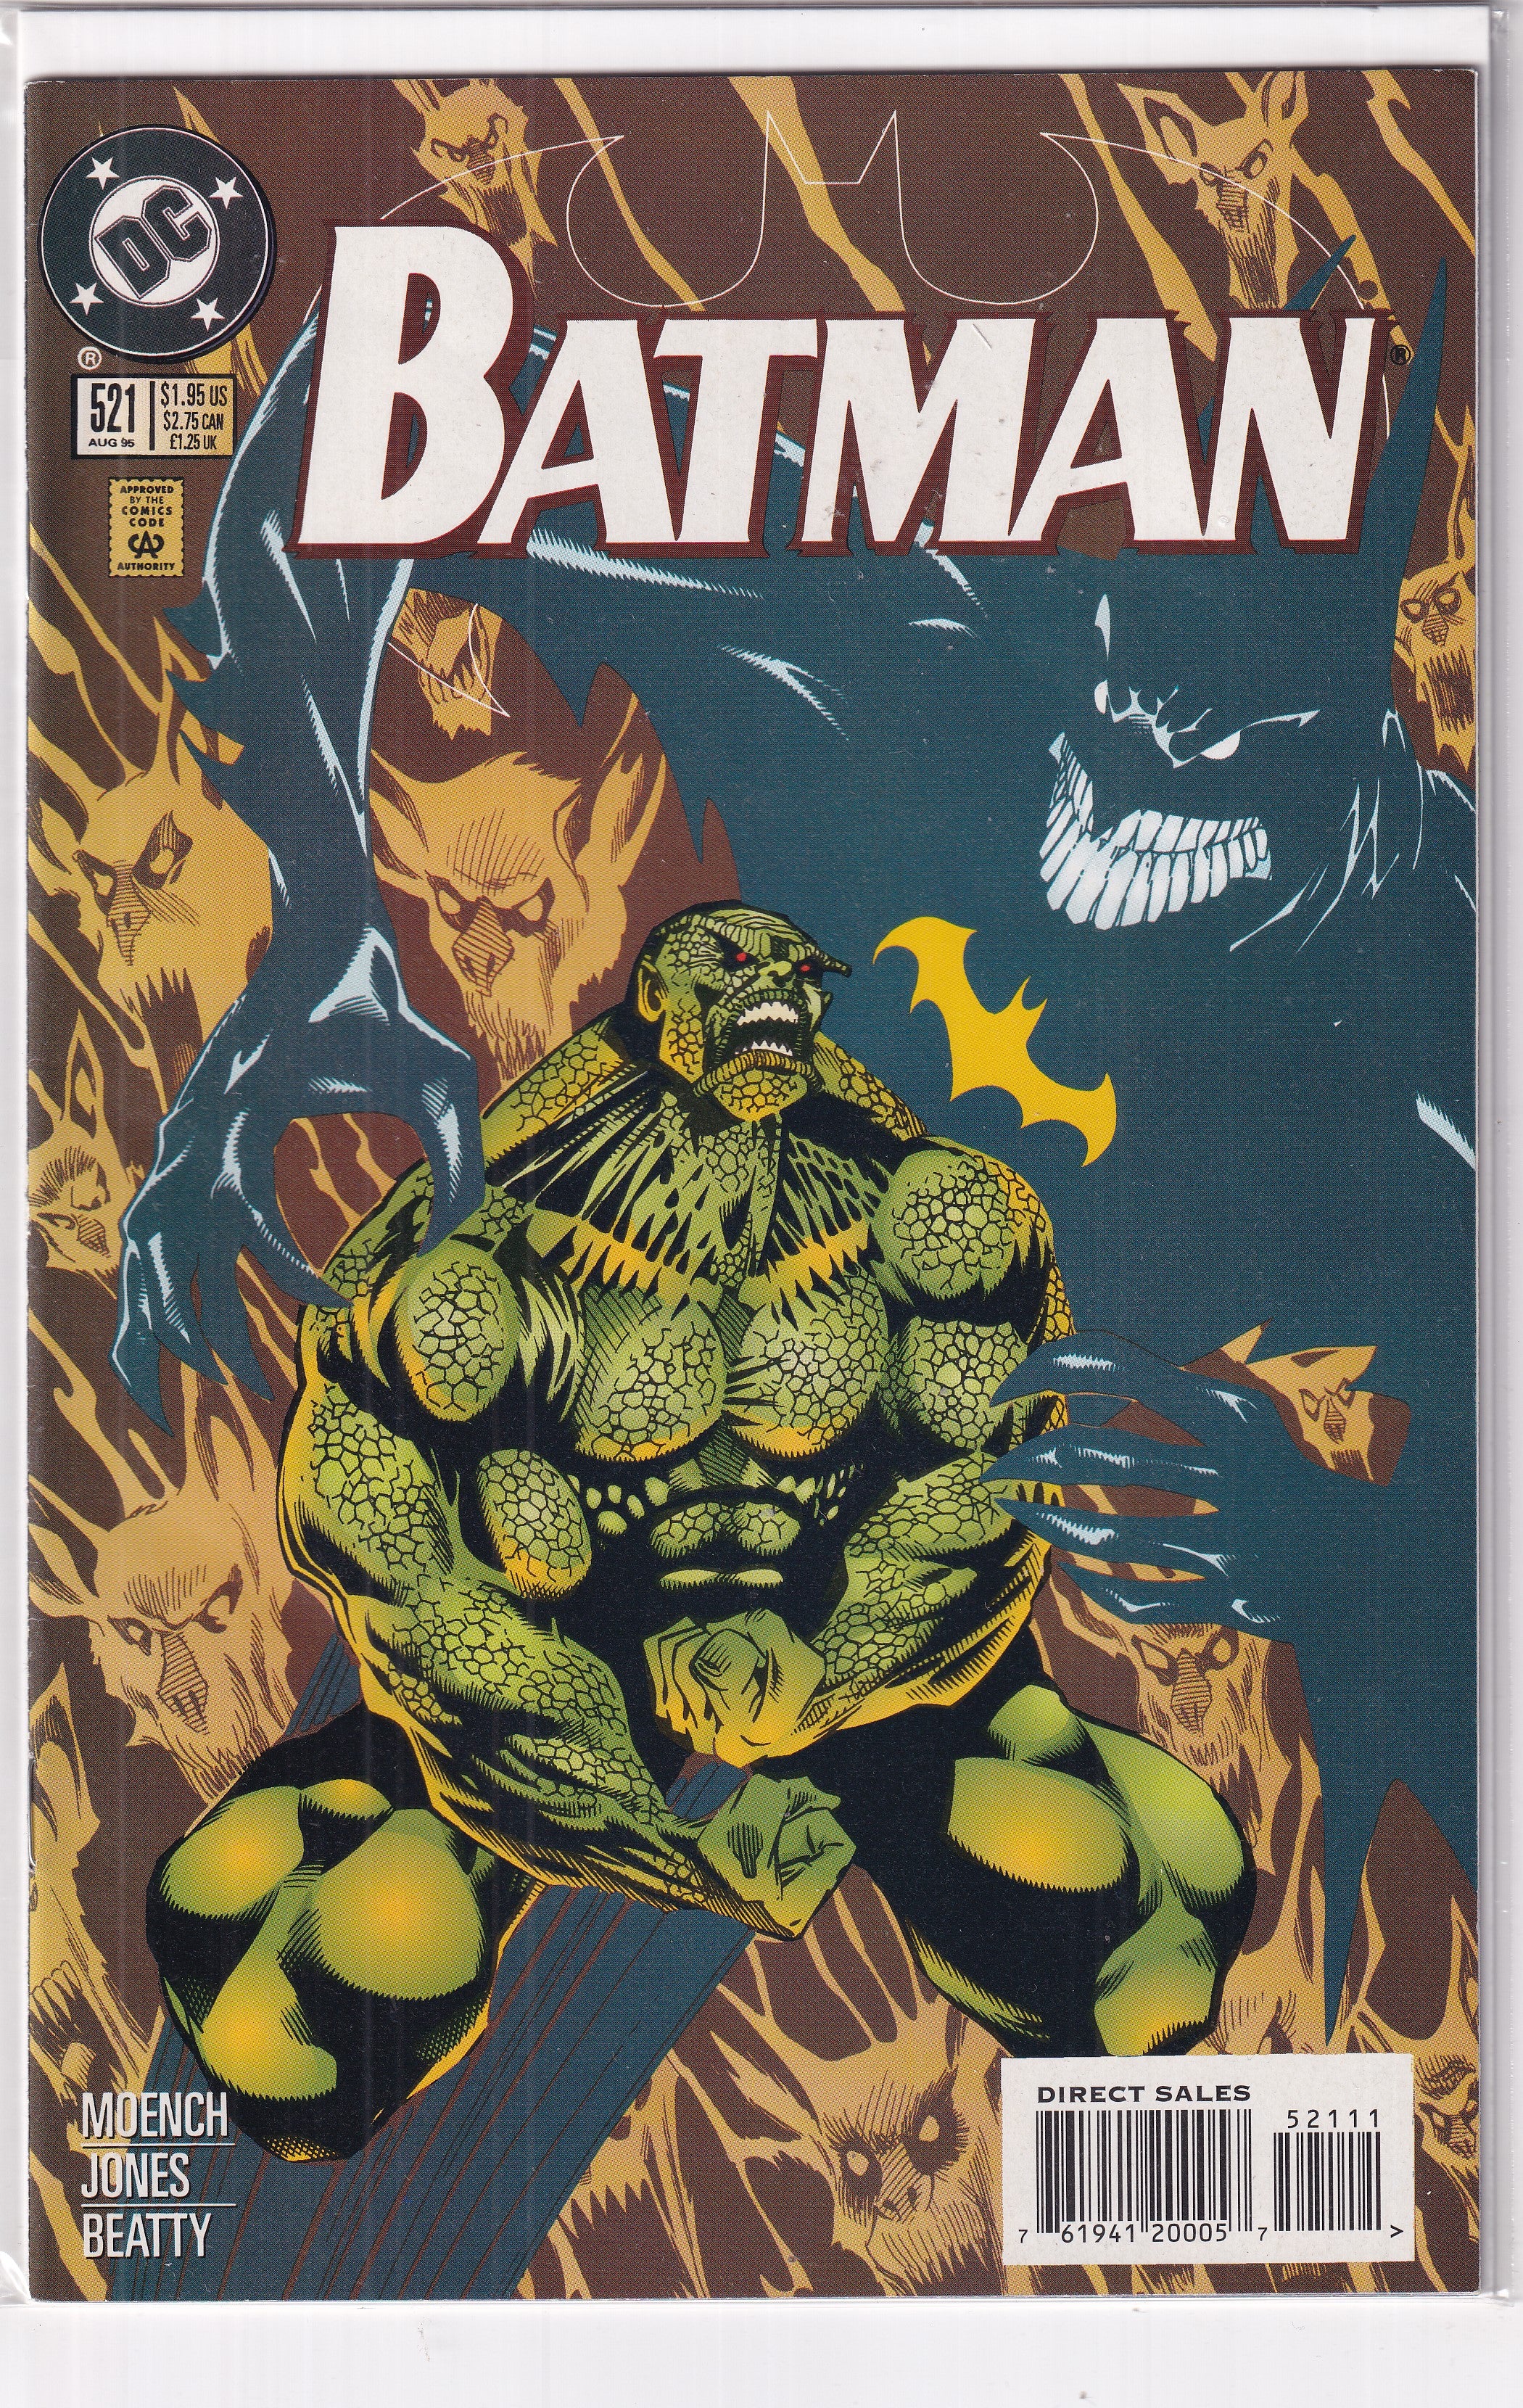 BATMAN #521 - Slab City Comics 